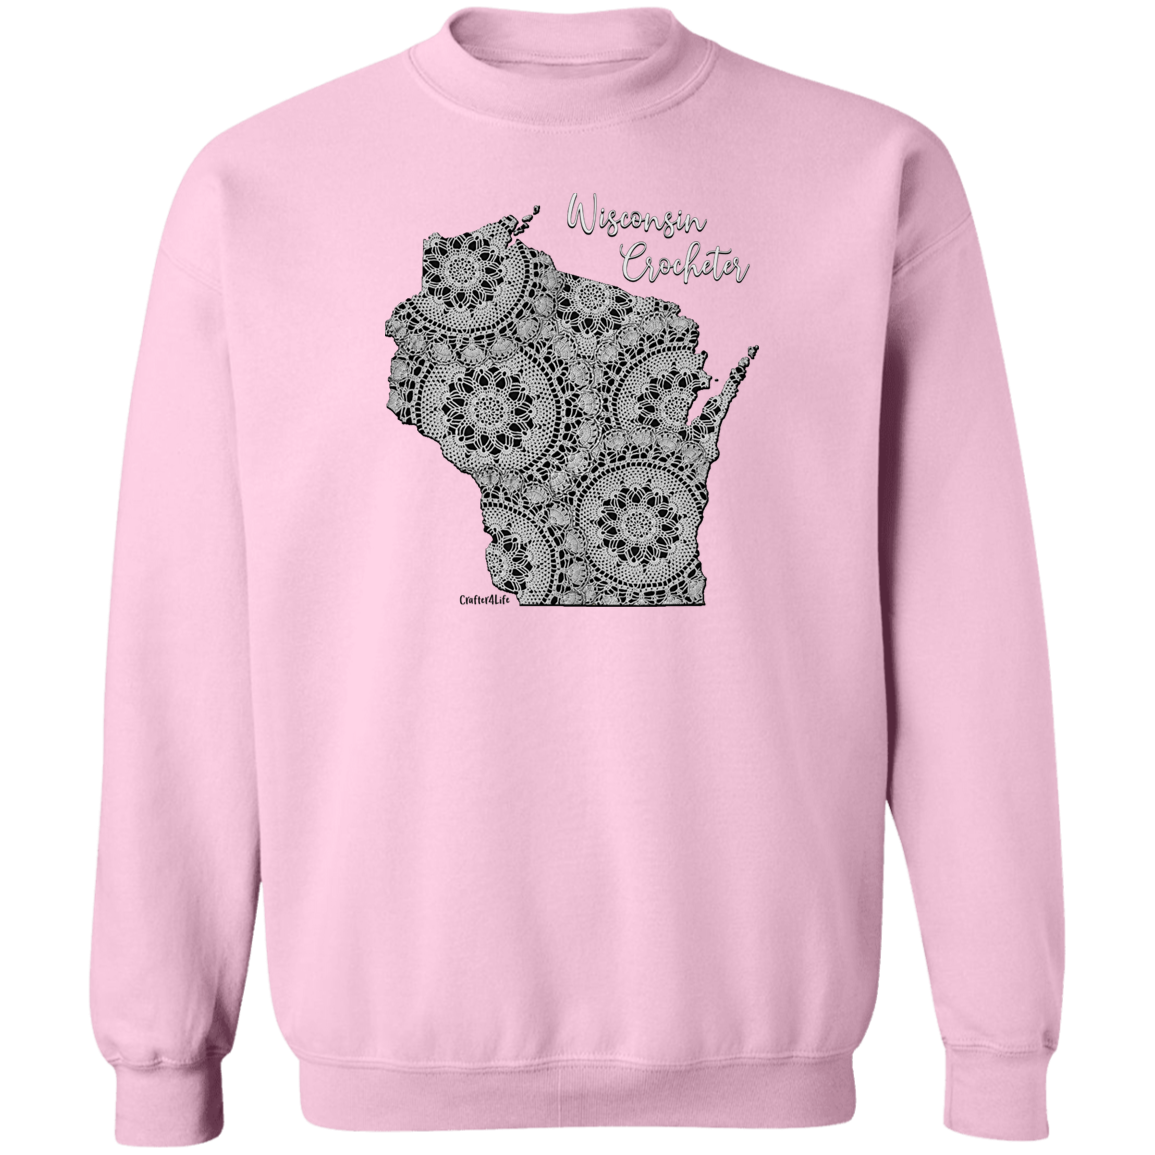 Wisconsin Crocheter Crewneck Pullover Sweatshirt